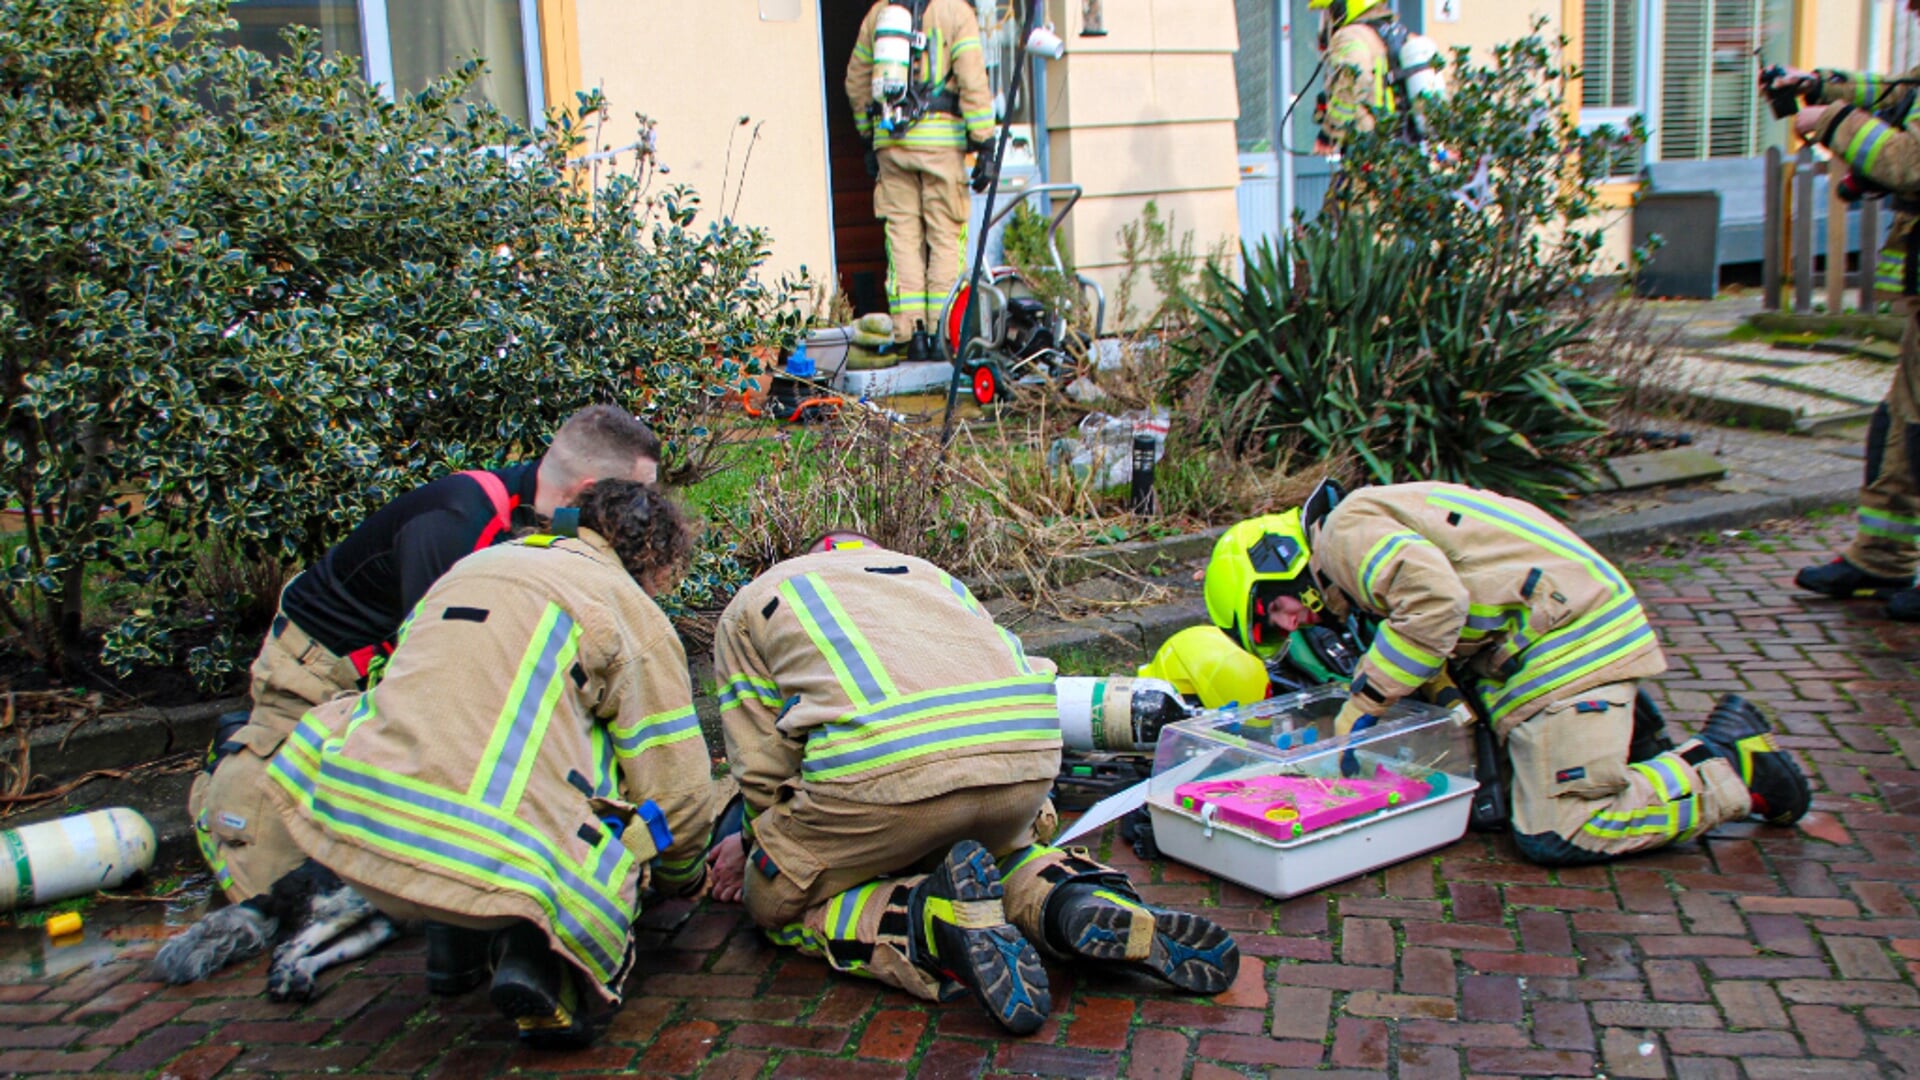 Brandweer mannen proberen het leven nog te redden van de Hond